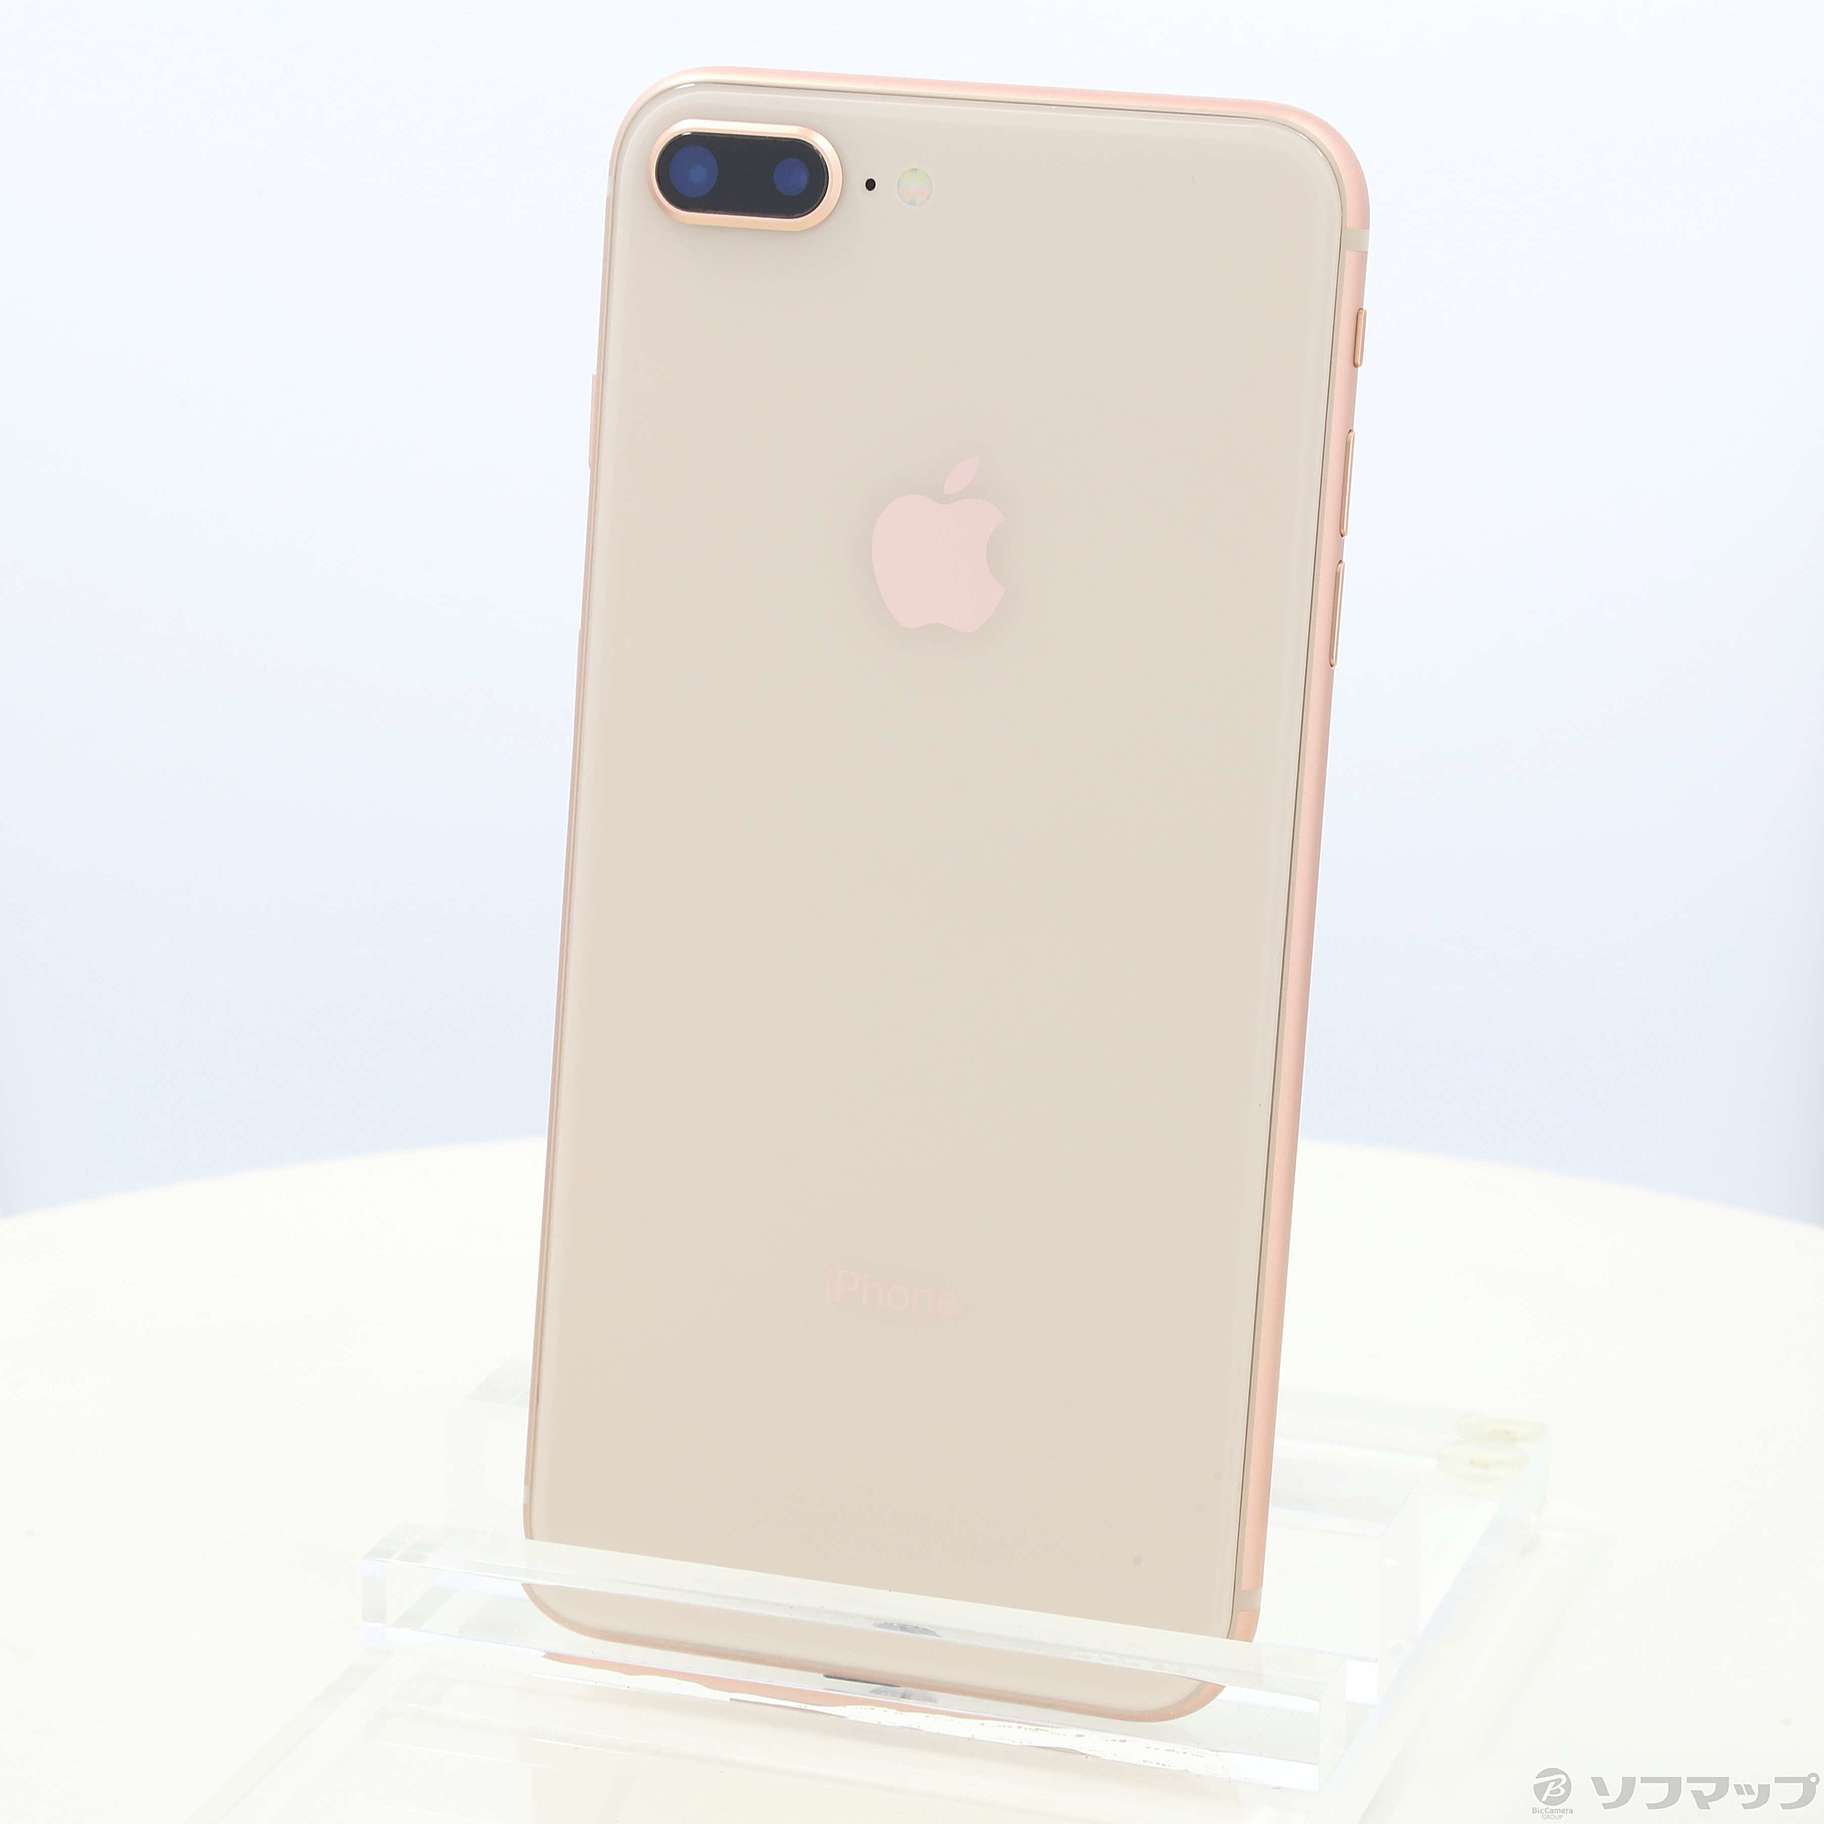 Apple iPhone8plus 256GB ピンクゴールド - スマートフォン本体